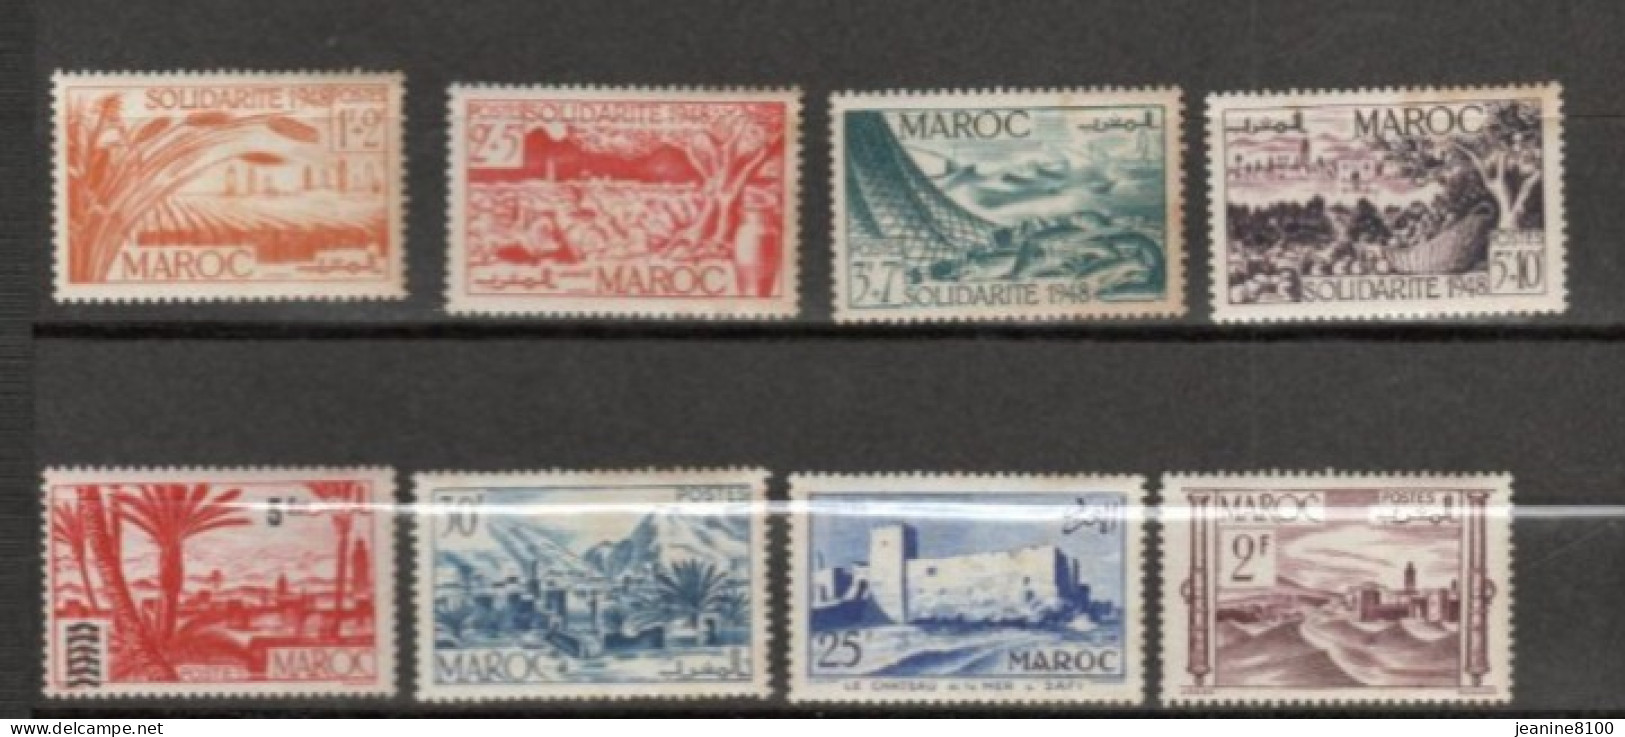 Lot de timbres Maroc neufs